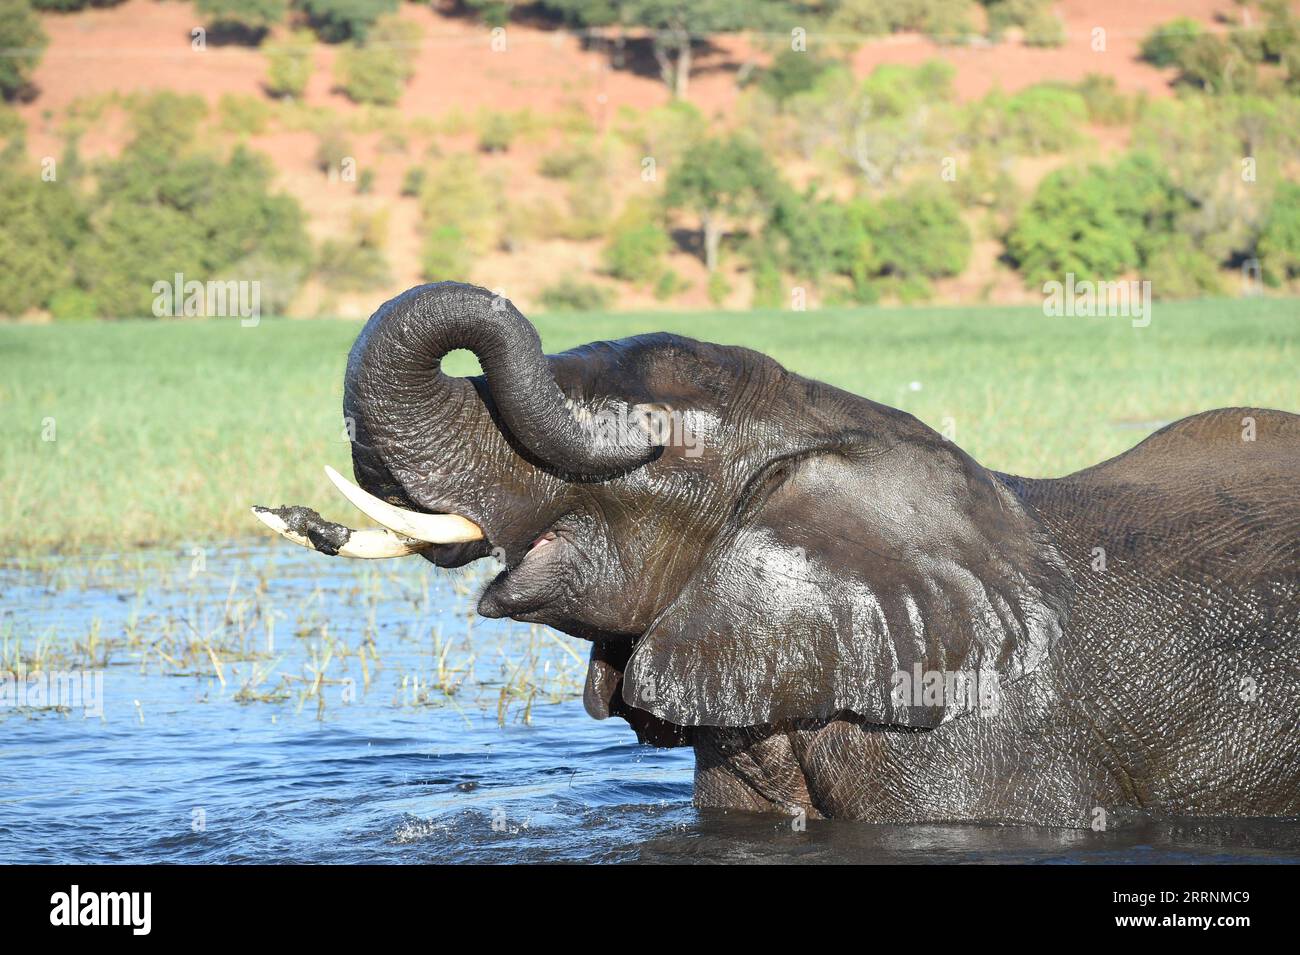 230120 -- GABORONE, 20. Januar 2023 -- ein Elefant wird im Chobe River im Nordwesten Botswanas Kasane gesehen, 10. Mai 2021. Die botswanische Regierung erhielt am Donnerstag eine Spende von sechs Bohrlöchern im Nordwesten des Landes von der Naturschutzfirma Okavango Wilderness Safaris OWS, die versucht, Konflikte zwischen Mensch und Tier zu reduzieren. Angesichts wachsender Menschen- und Wildtierpopulationen und der steigenden Gefahr von Konflikten sagte Botsuanas Umwelt- und Tourismusministerin Philda Kereng, dass die Bohrung von Bohrlöchern einen großen Beitrag zur Stabilität der Landschaft leisten wird. T Stockfoto